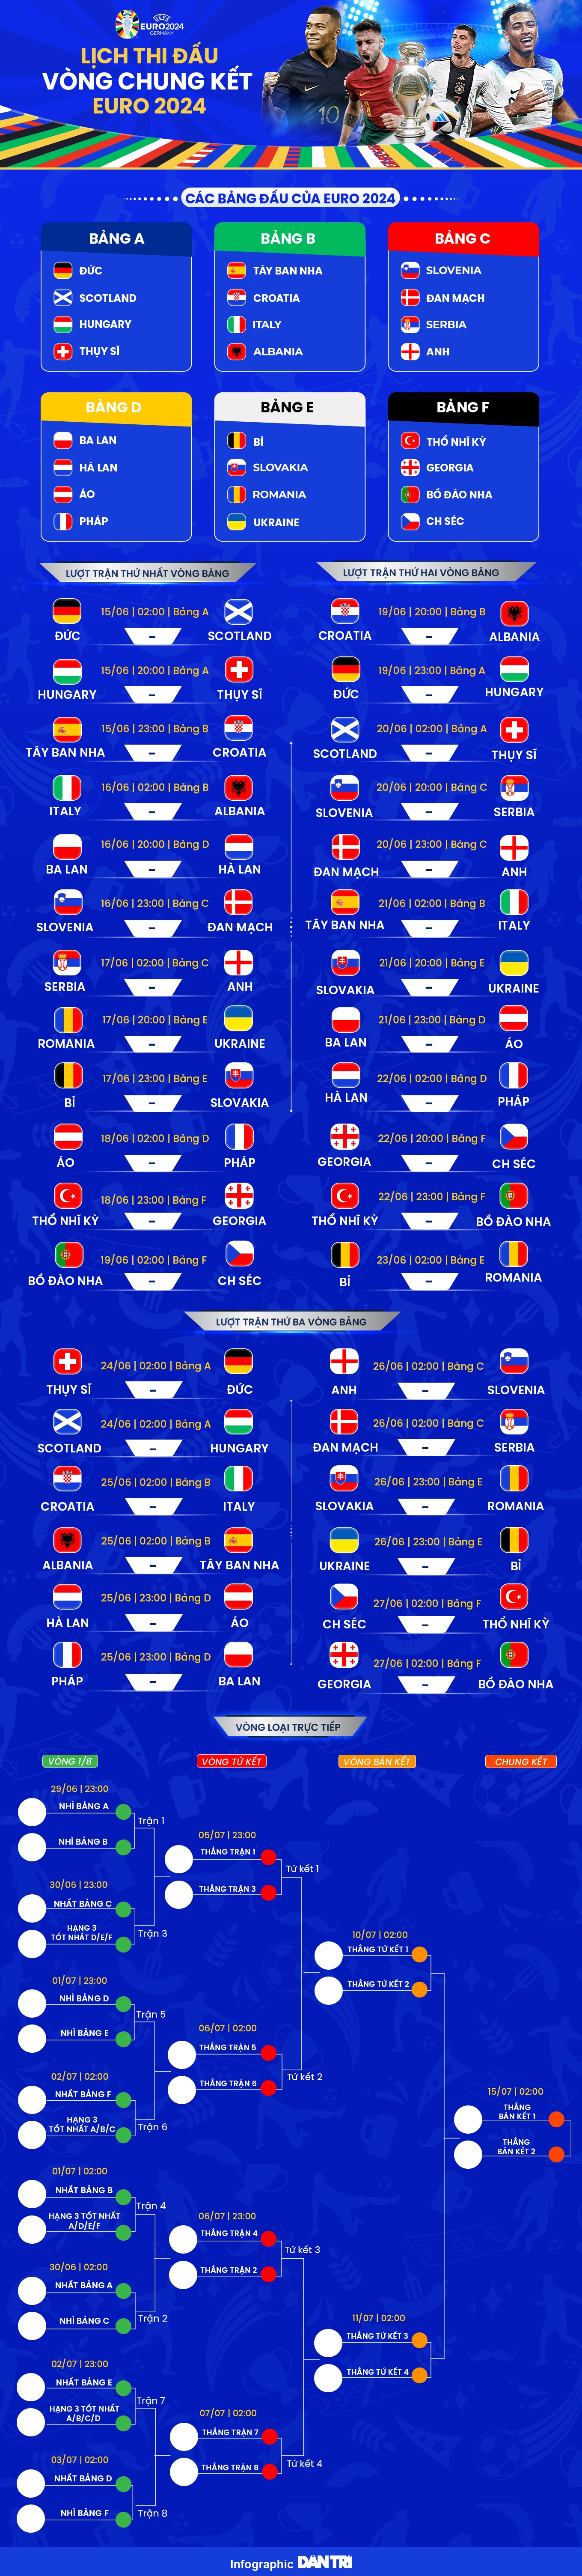 Lịch thi đấu chính thức Euro 2024 - 1